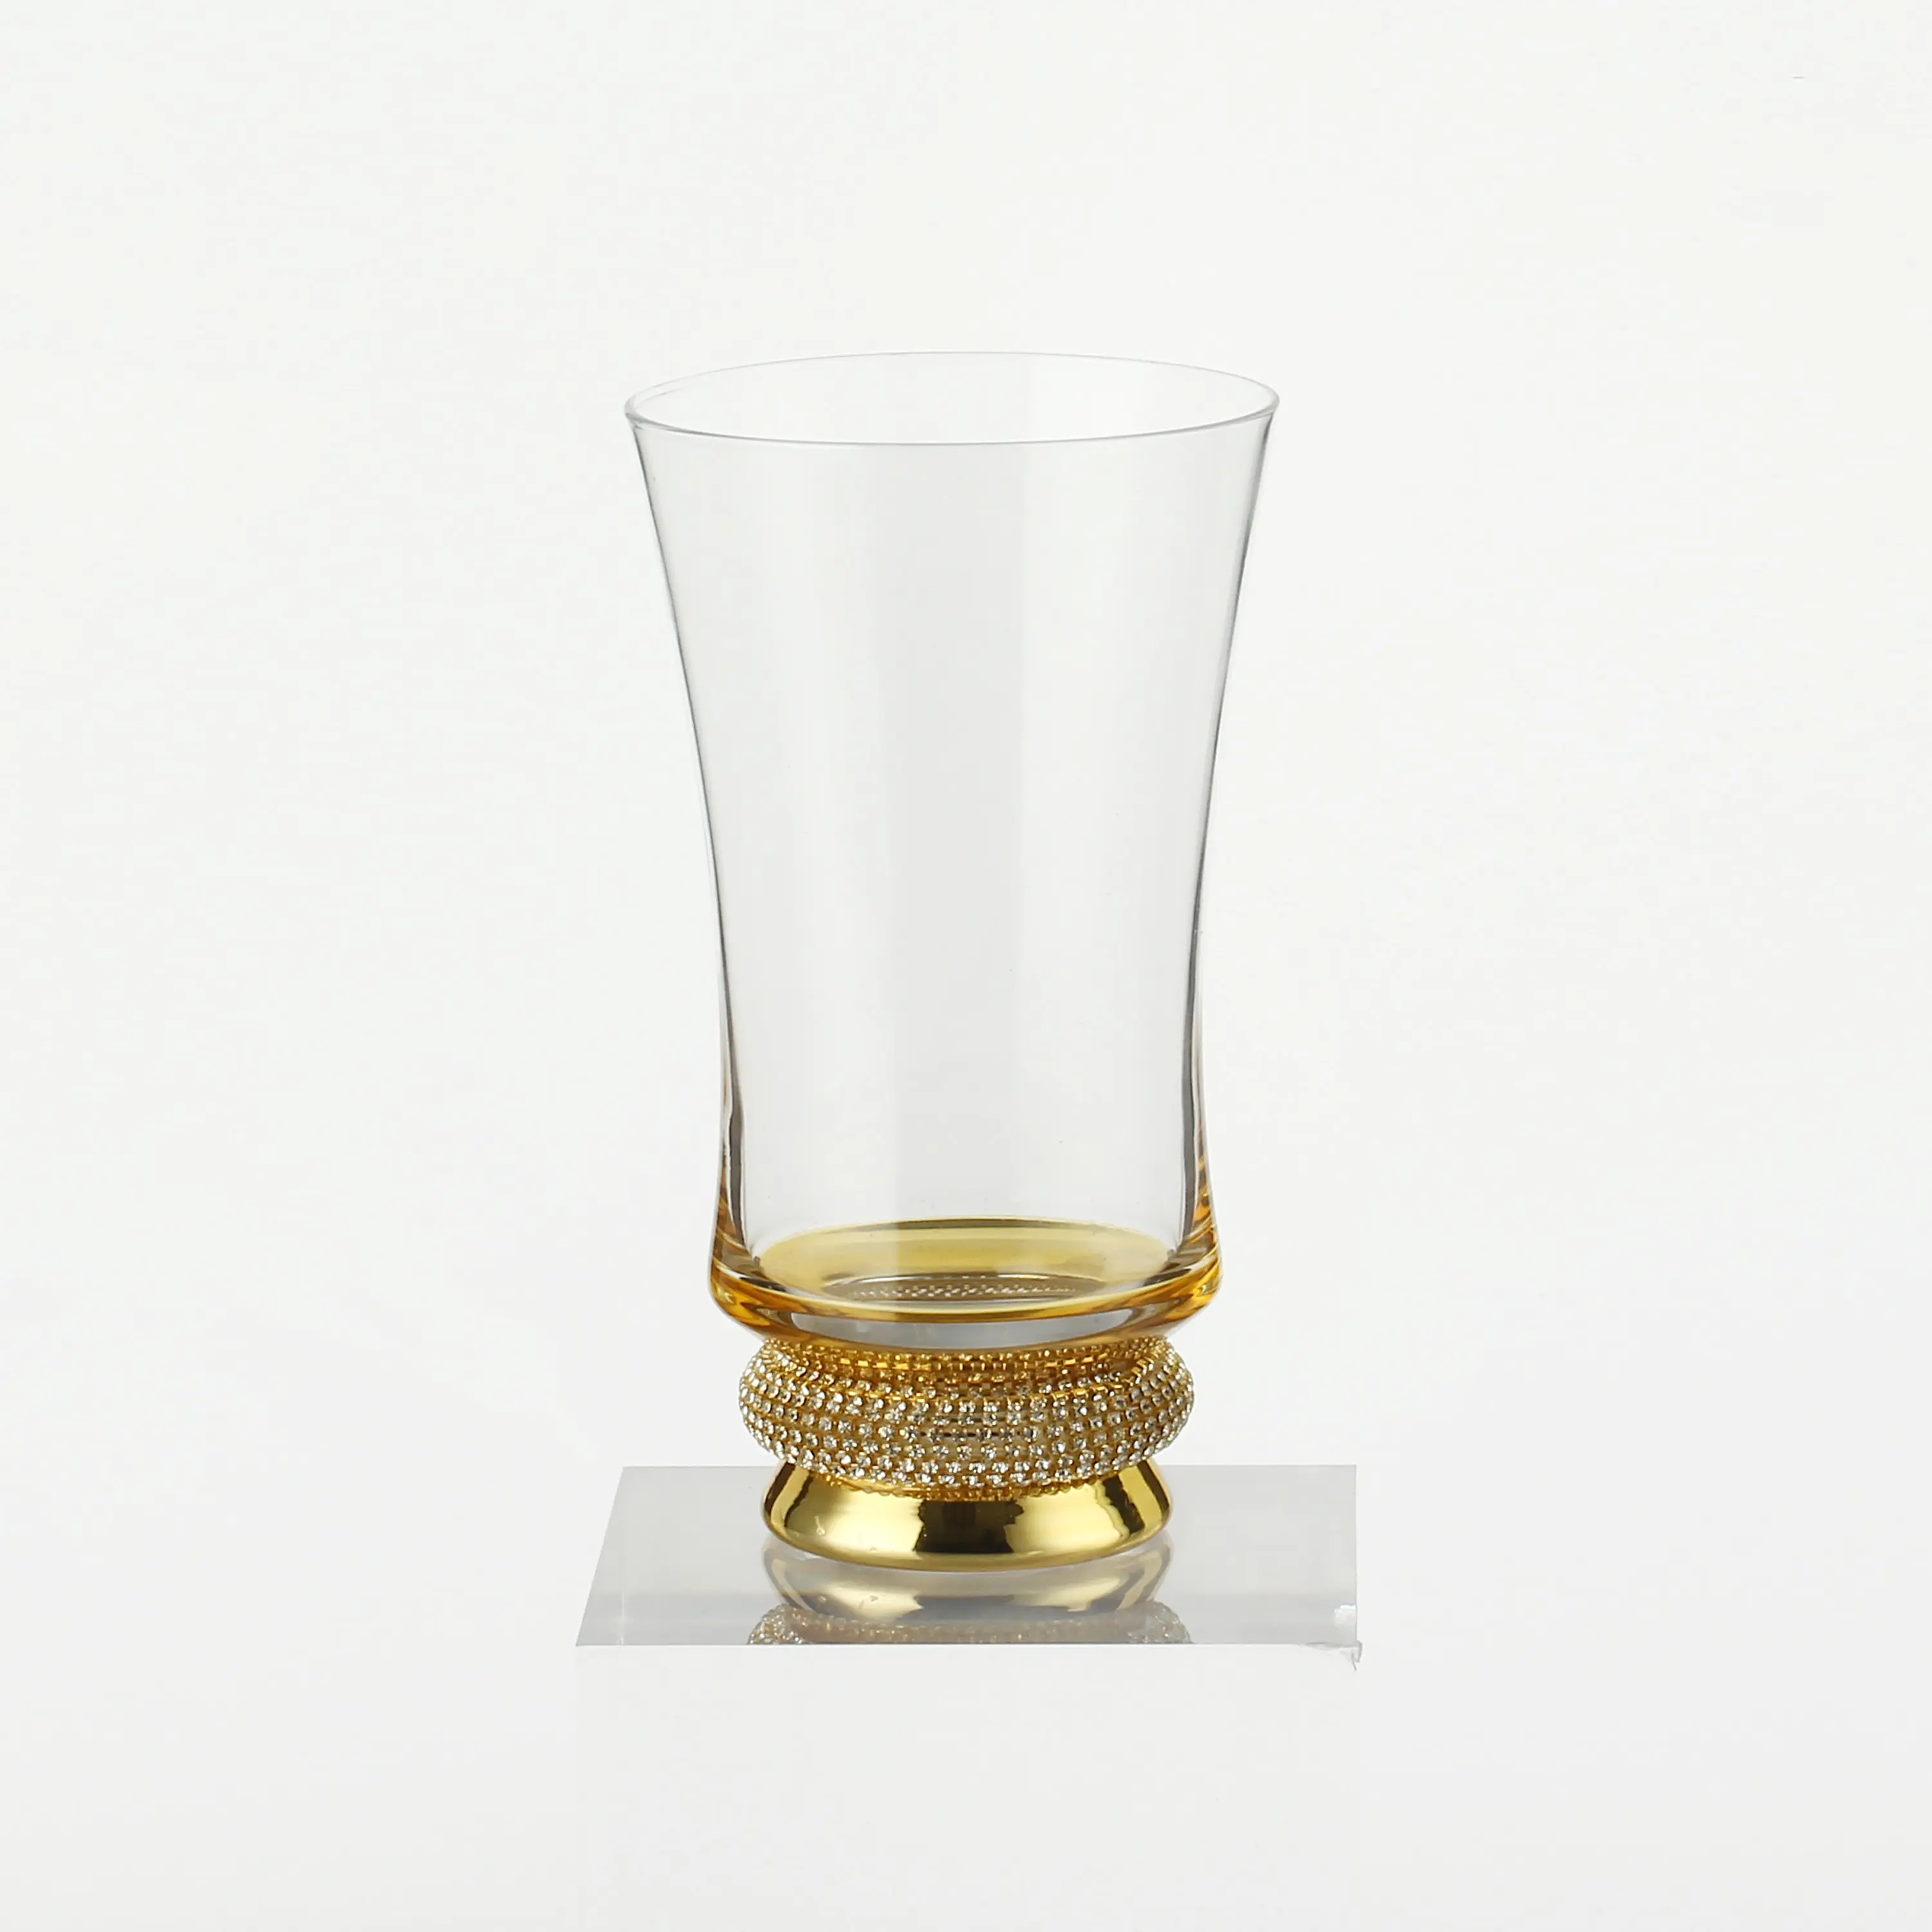 ゴールドダイヤモンドボトムハイボールガラスパーソナライズされたエレガントな飲用ガラスでイタリアのガラス製品を電気メッキ